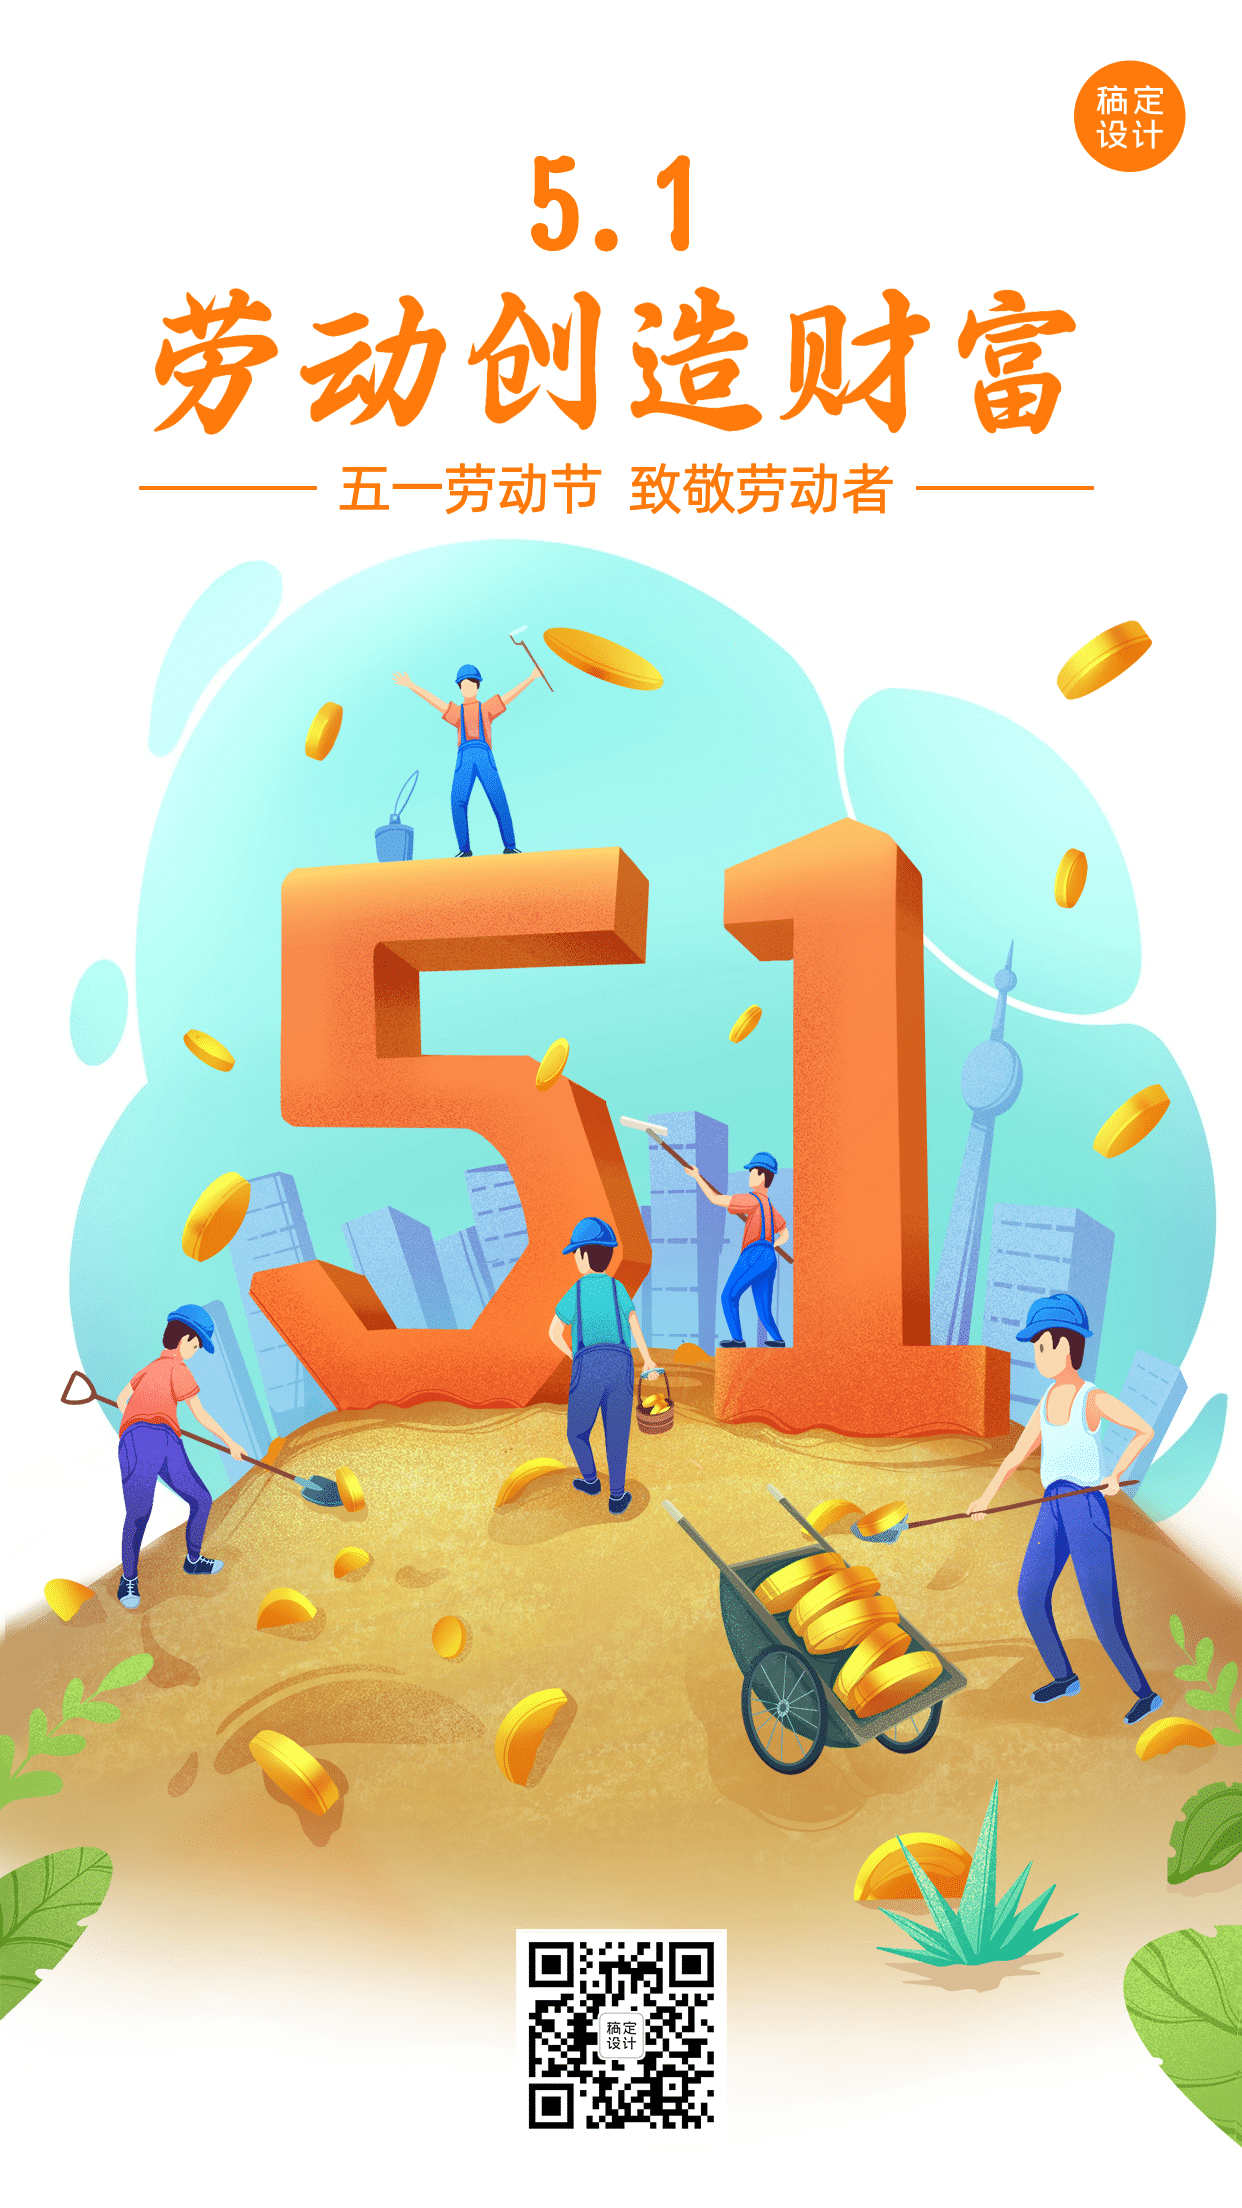 劳动节金融保险宣传推广卡通海报预览效果